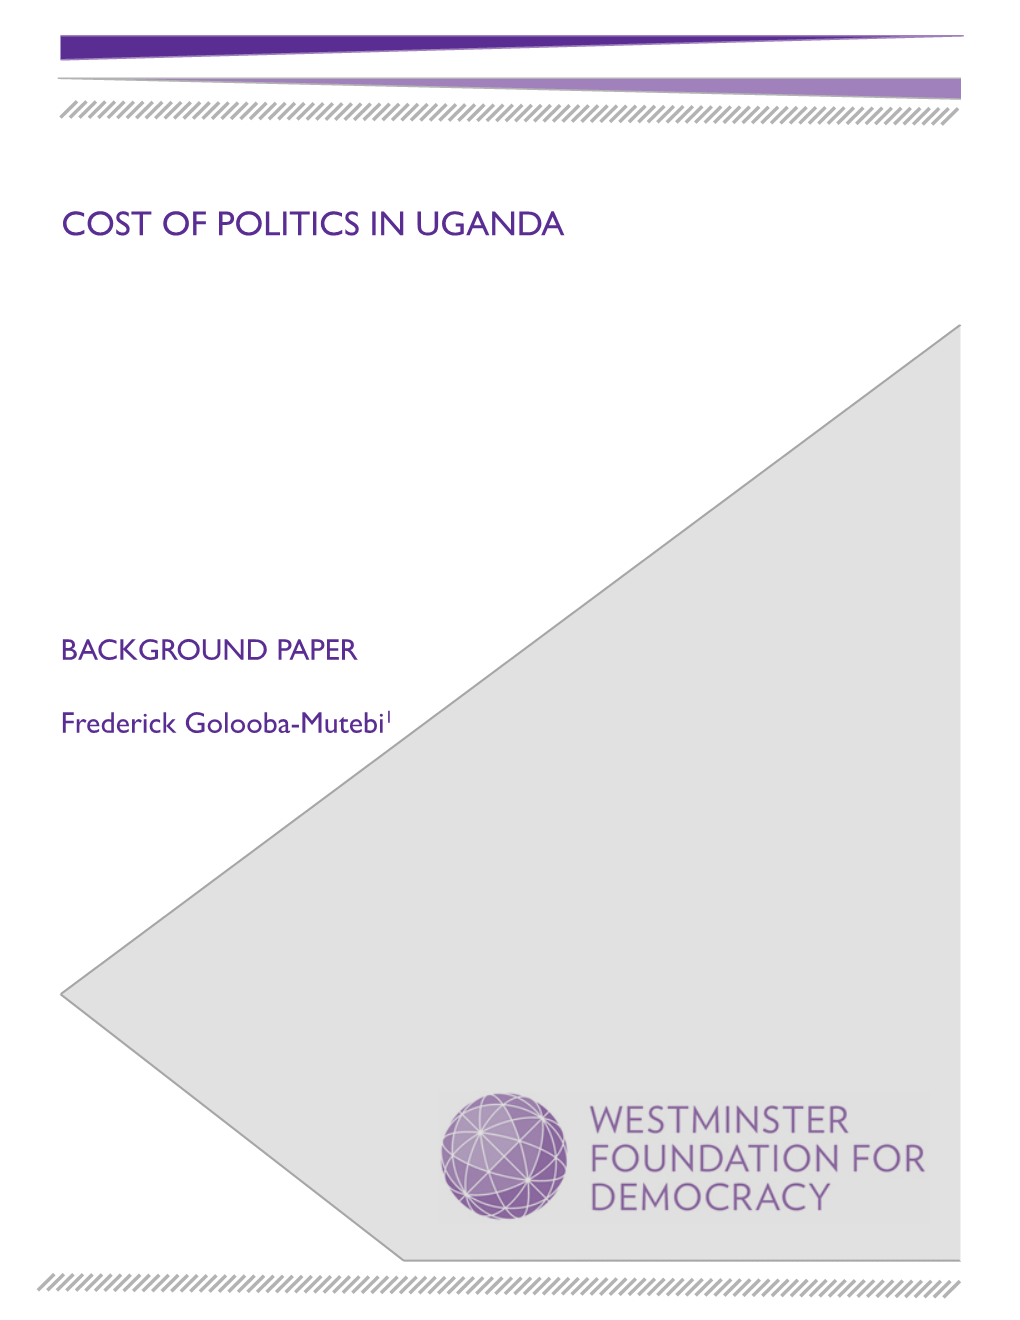 Cost of Politics in Uganda